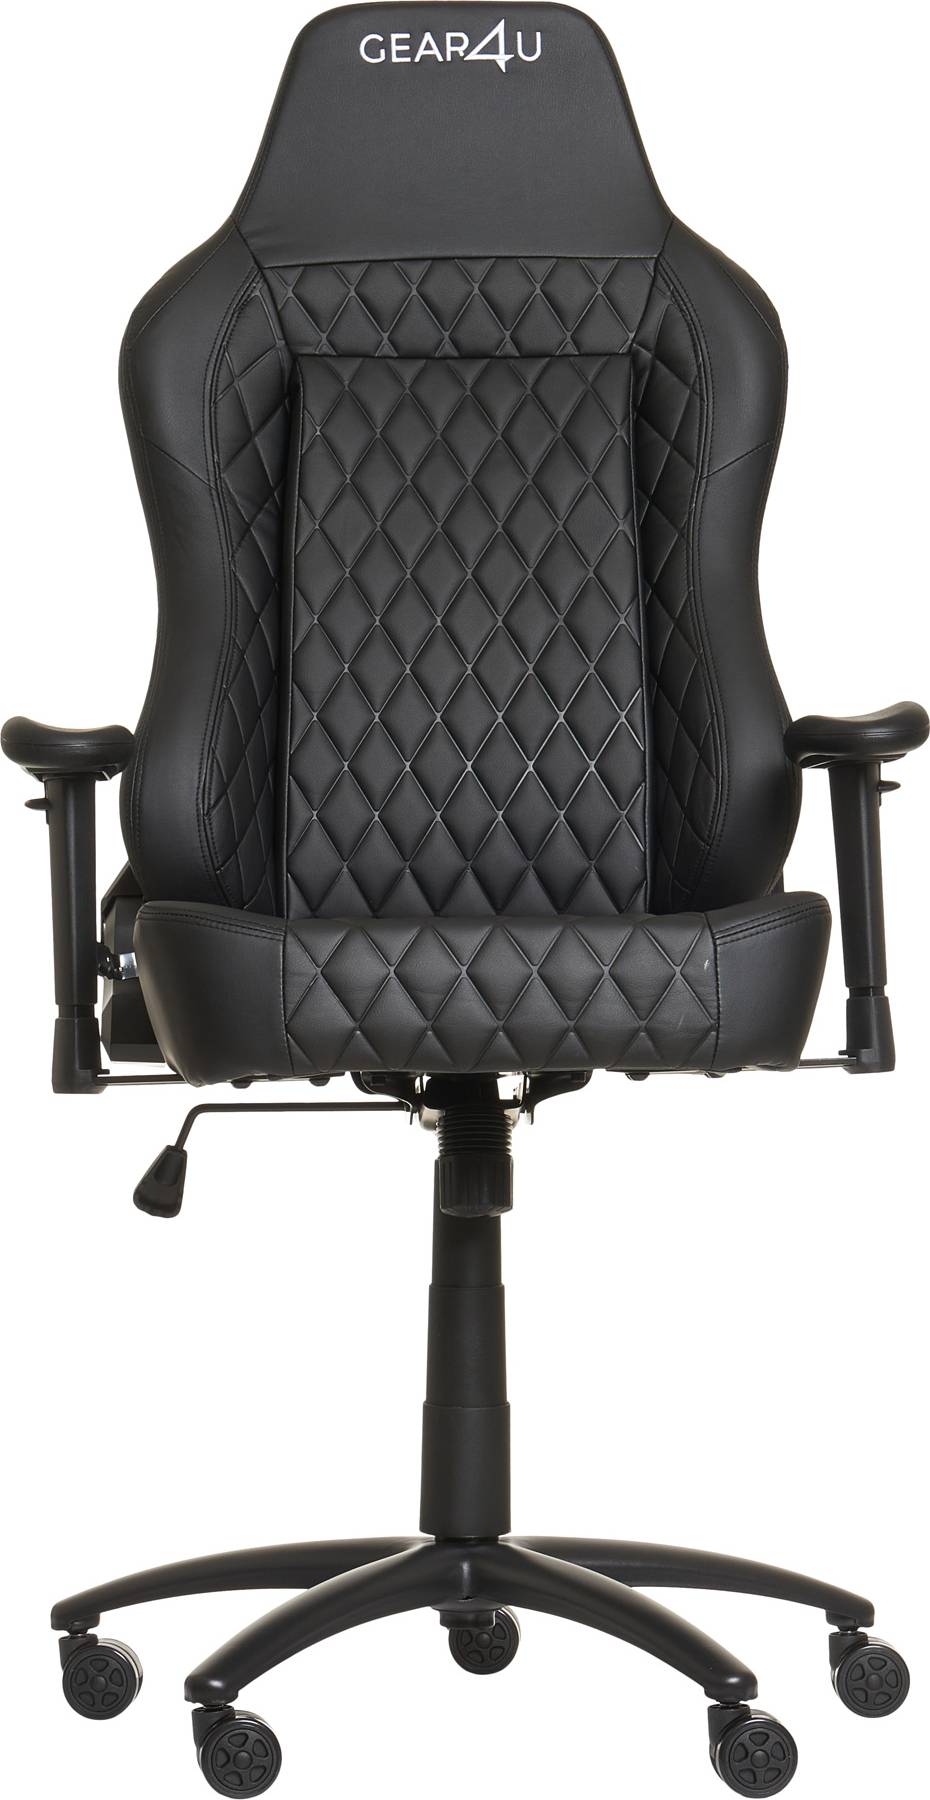  Bild på Gear4U Comfort Gaming Chair - Black gamingstol